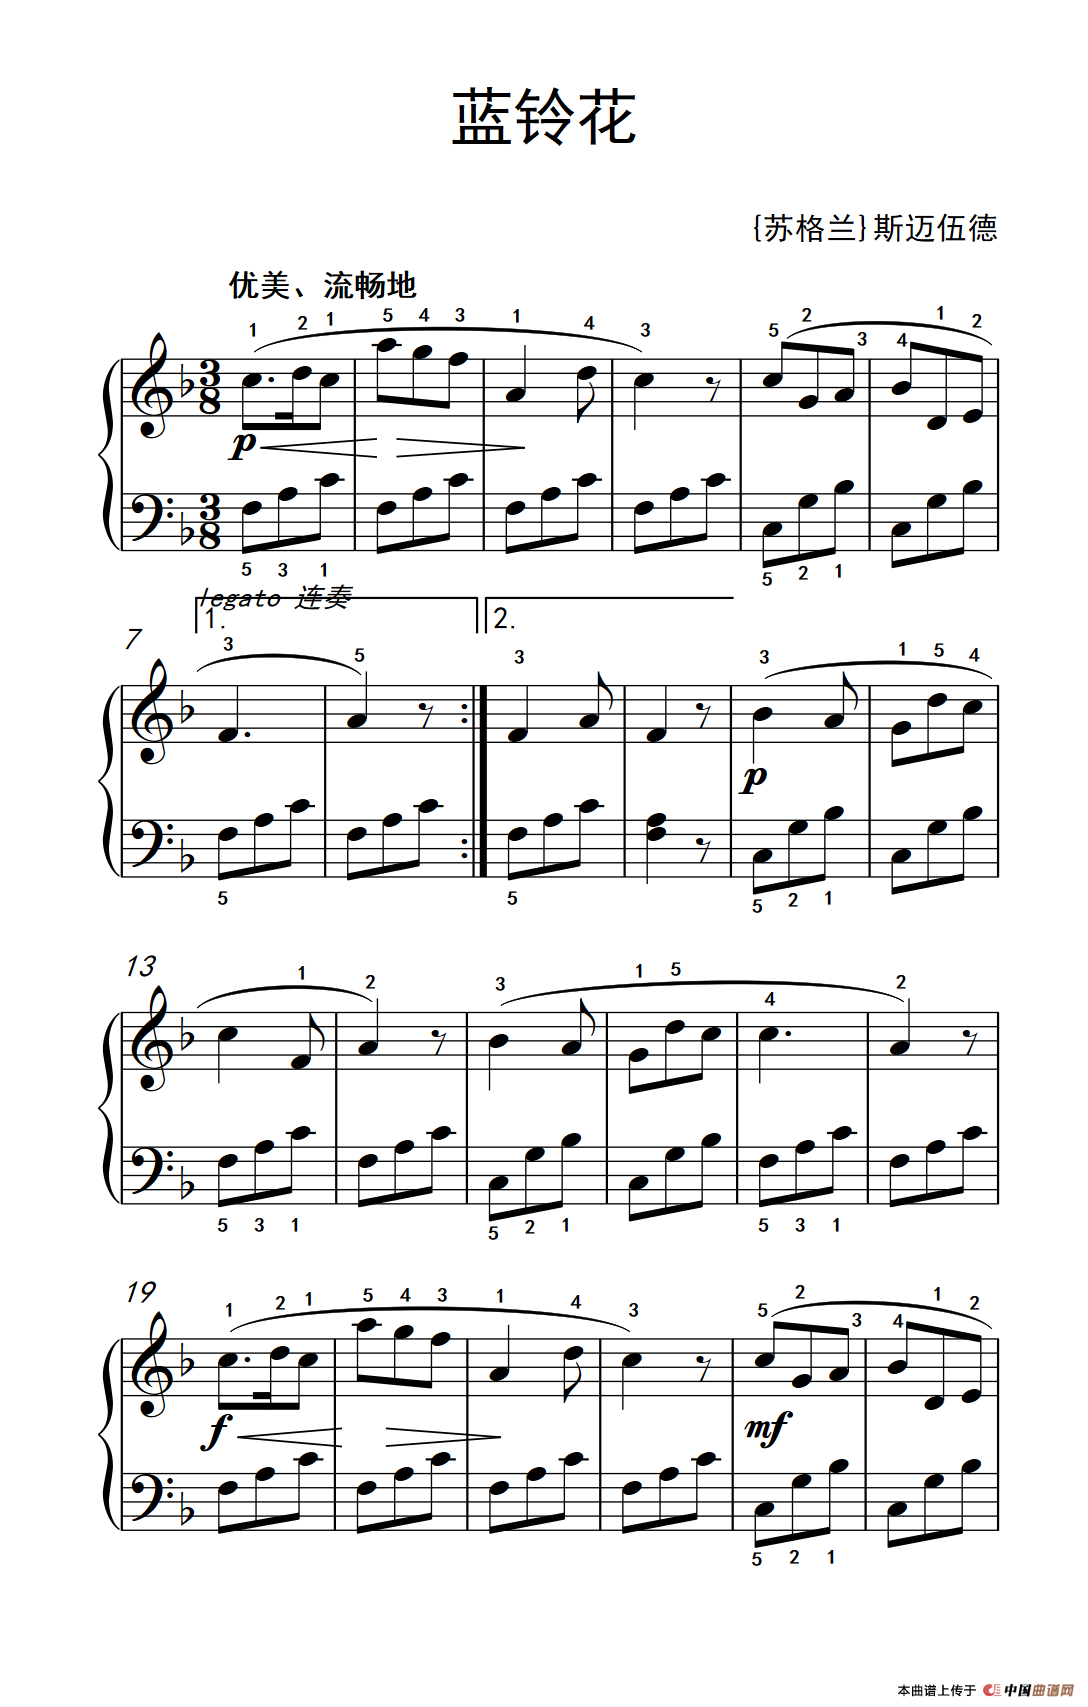 《蓝铃花》钢琴曲谱图分享